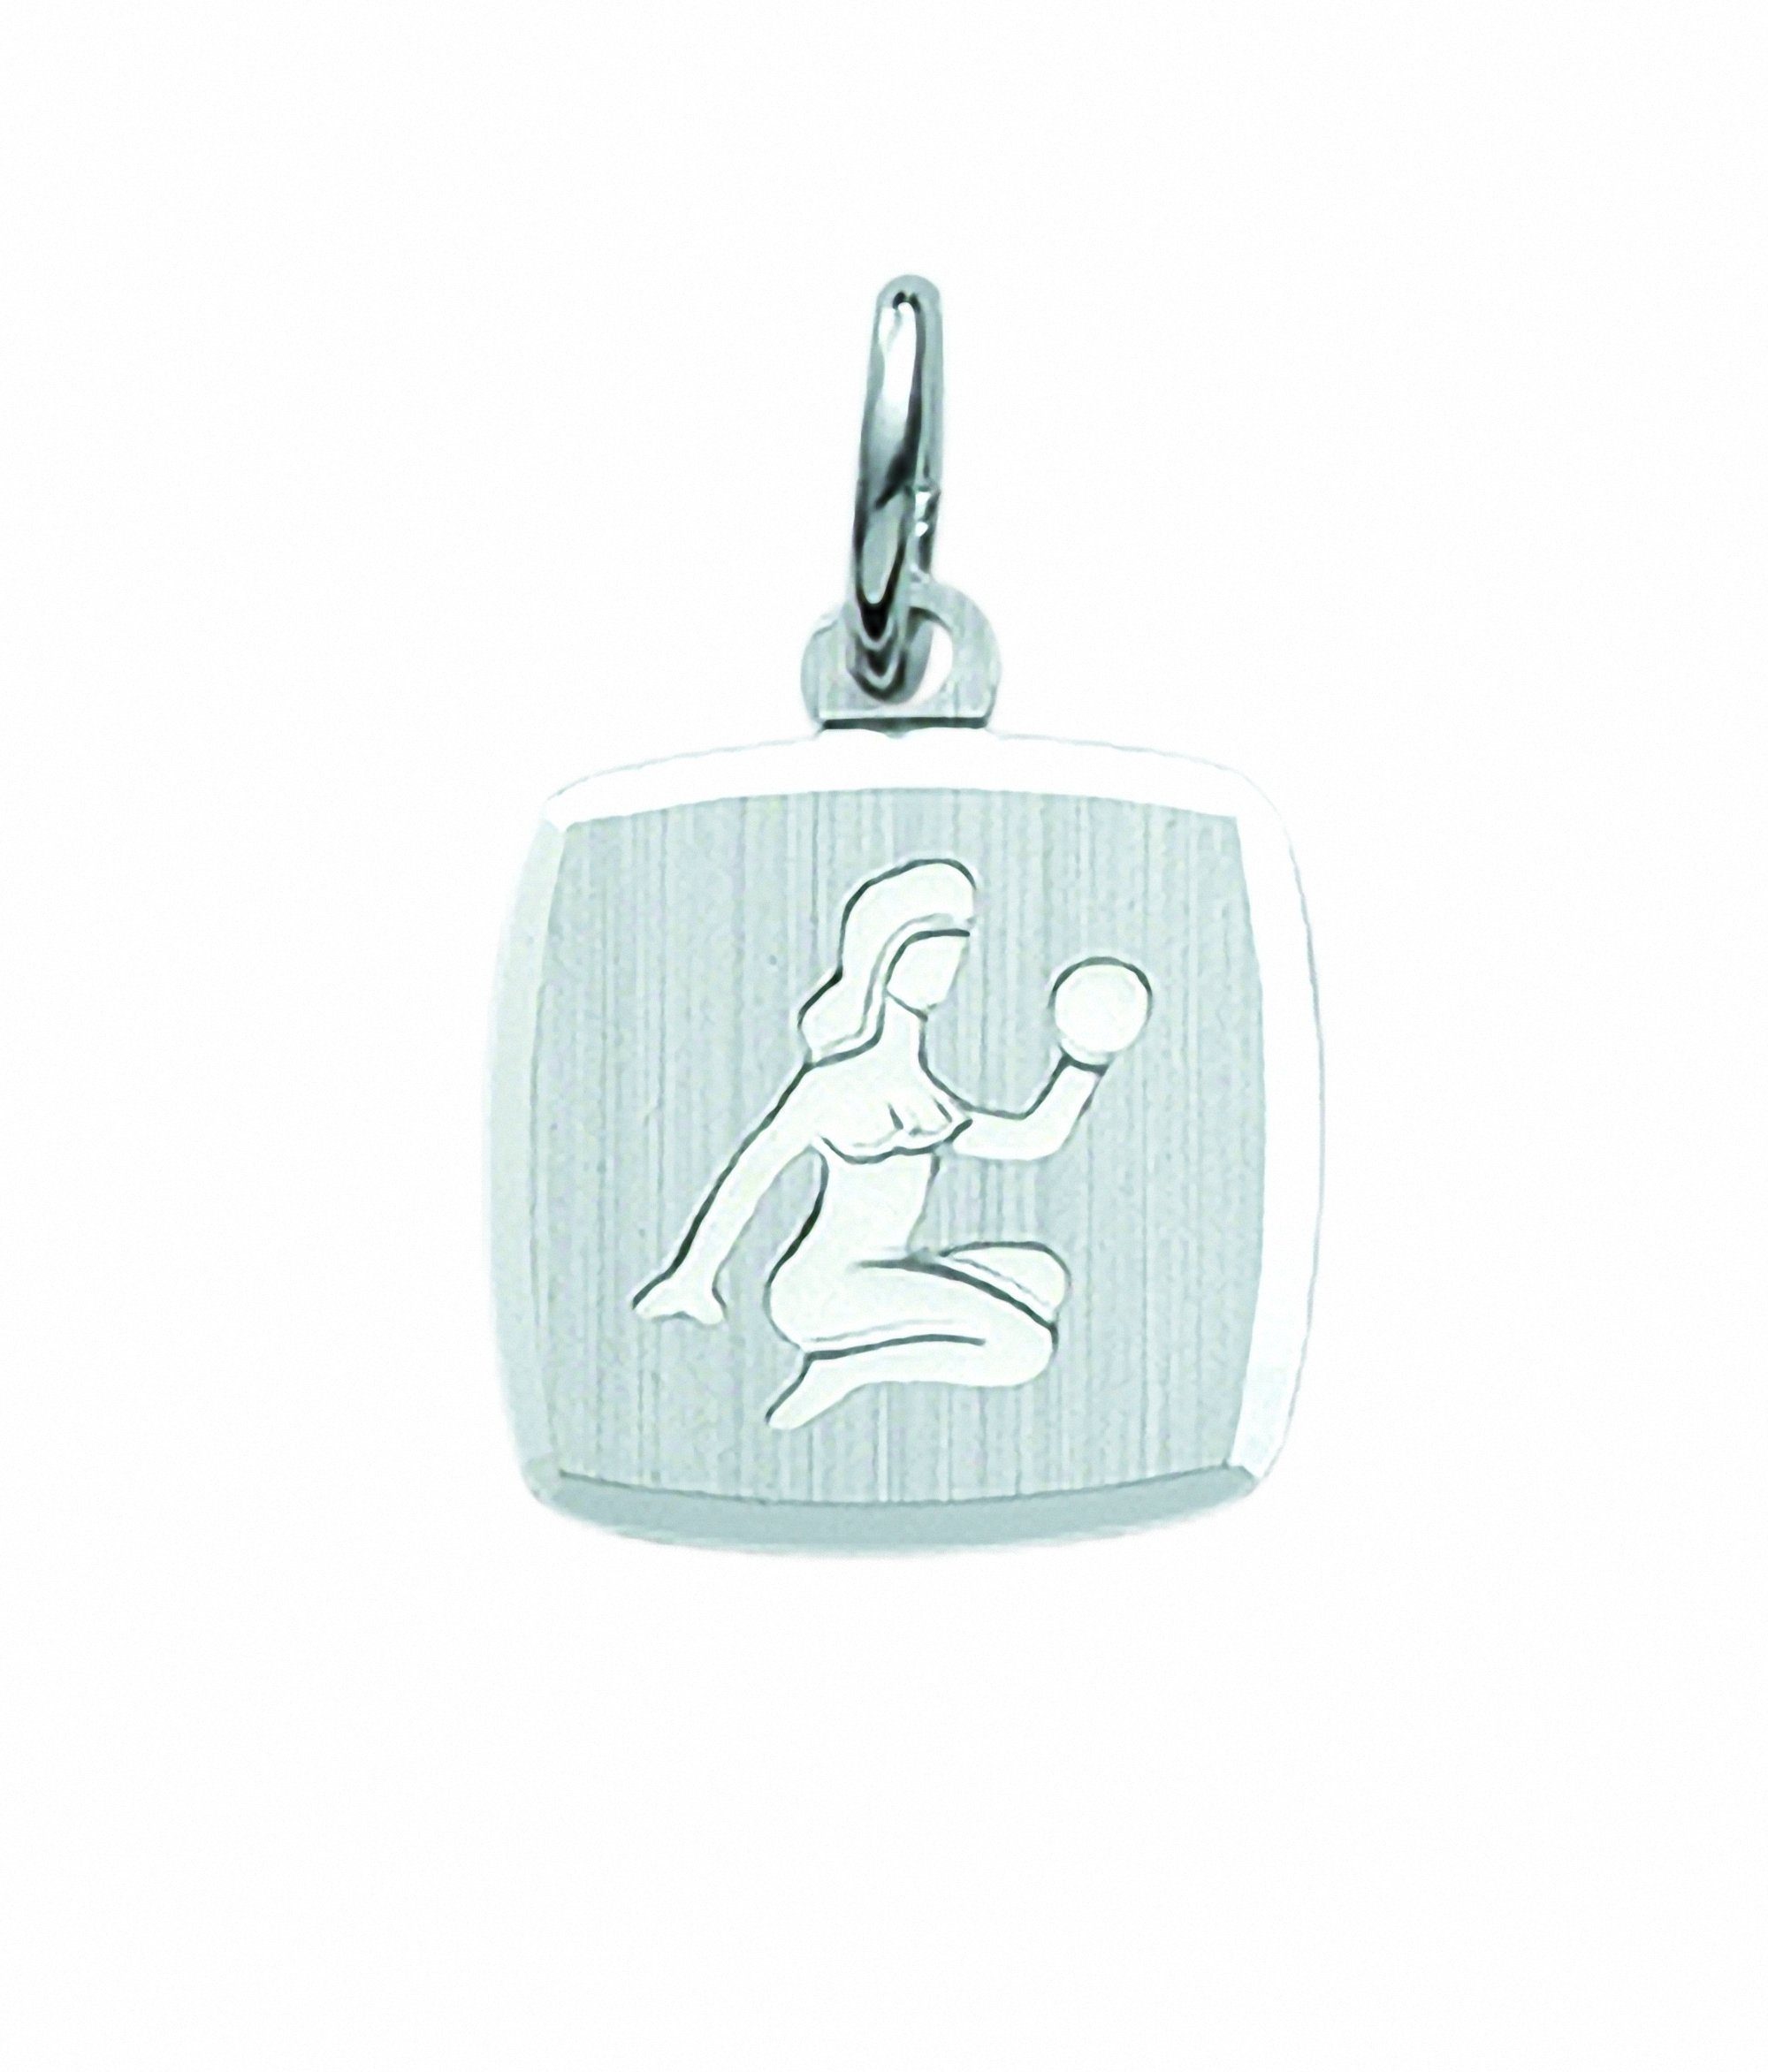 Jungfrau, Anhänger Sternzeichen Set 925 Kette mit Silber Adelia´s Anhänger Halskette Schmuckset - mit